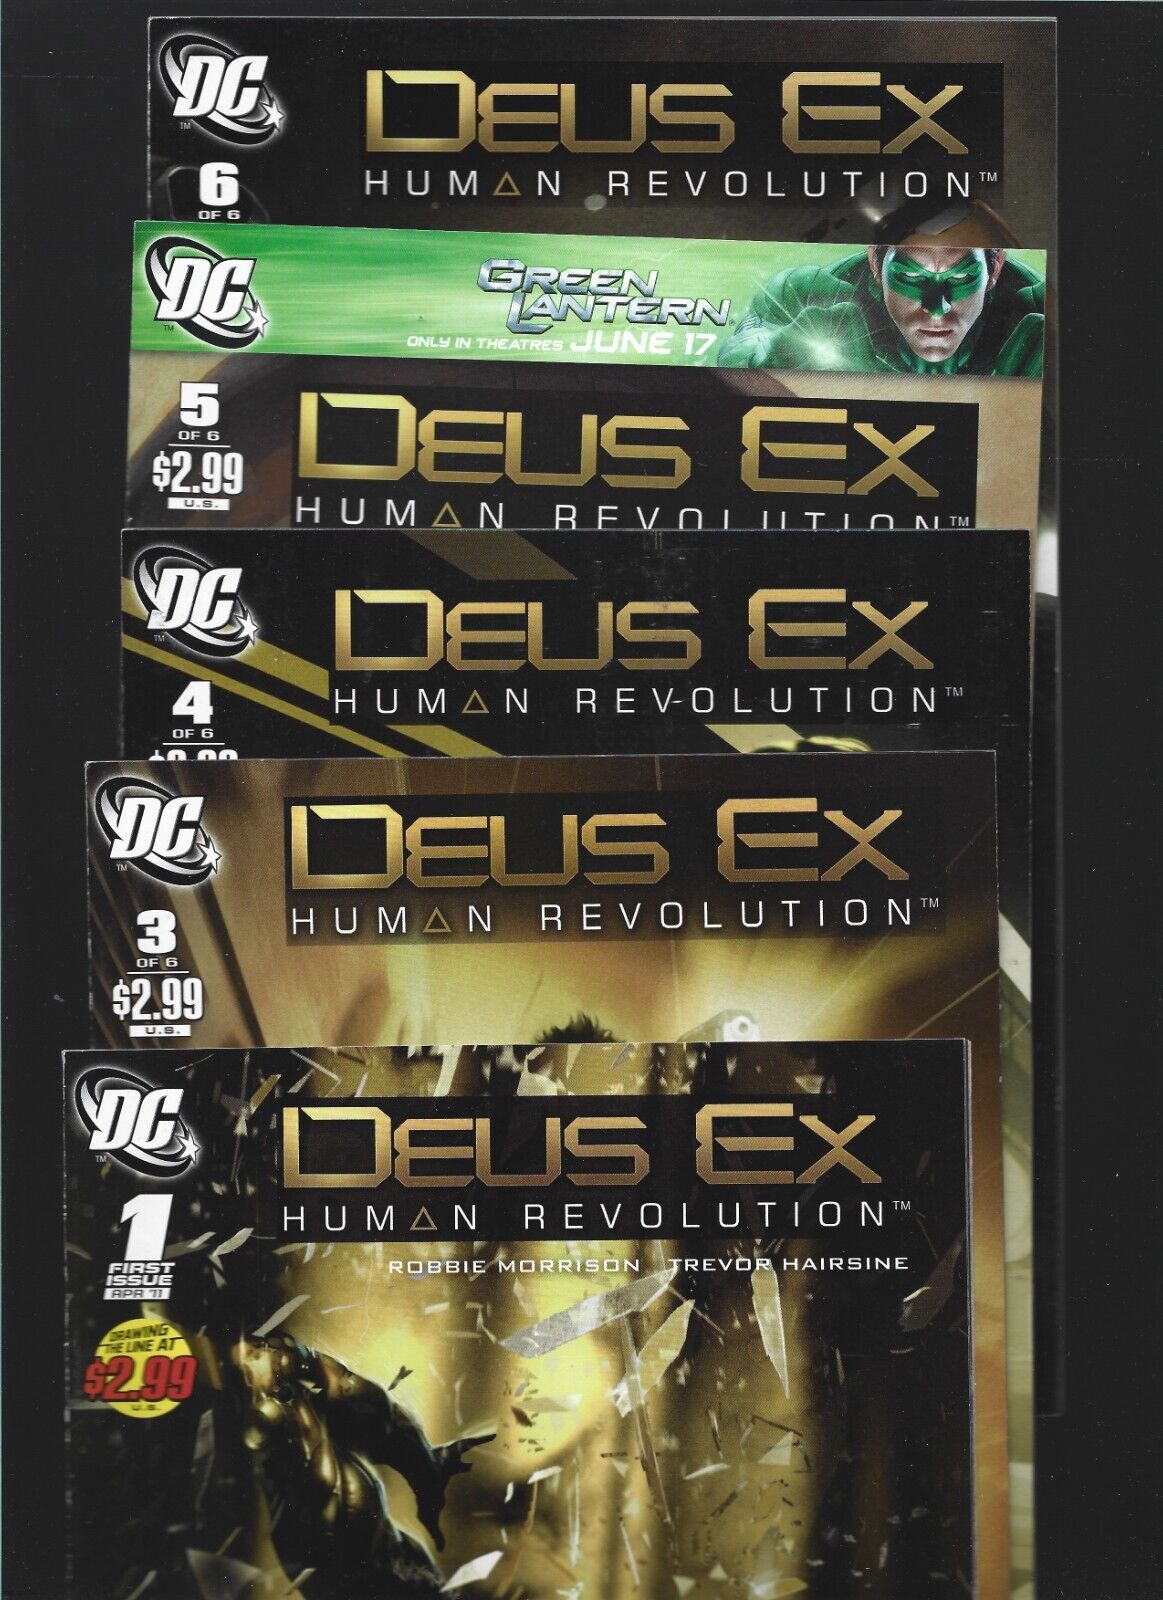 VIDEO GAME COMICS - Deus Ex: Human Revolution #1 3 4 5 6 DC Vertigo